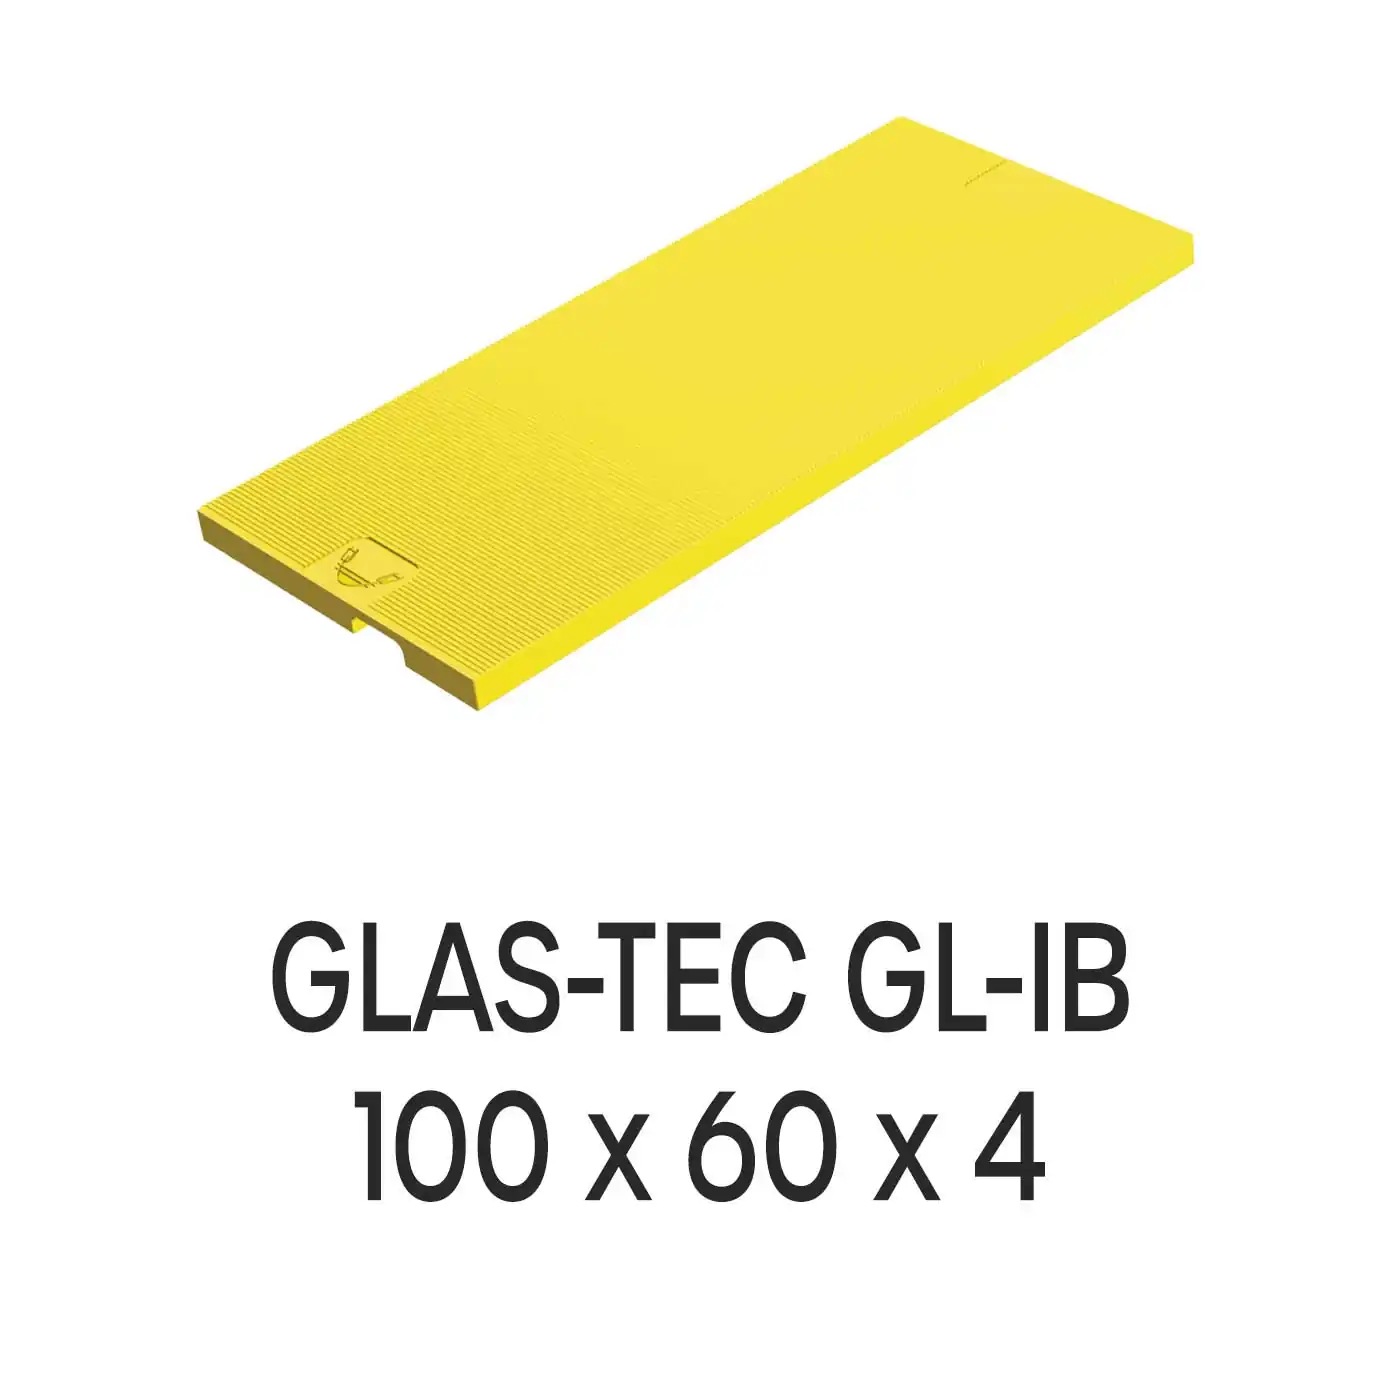 Roto Verglasungsklotz GLAS-TEC GL-IB, 100 x 60 x 4 mm, schwarz, 500 Stück